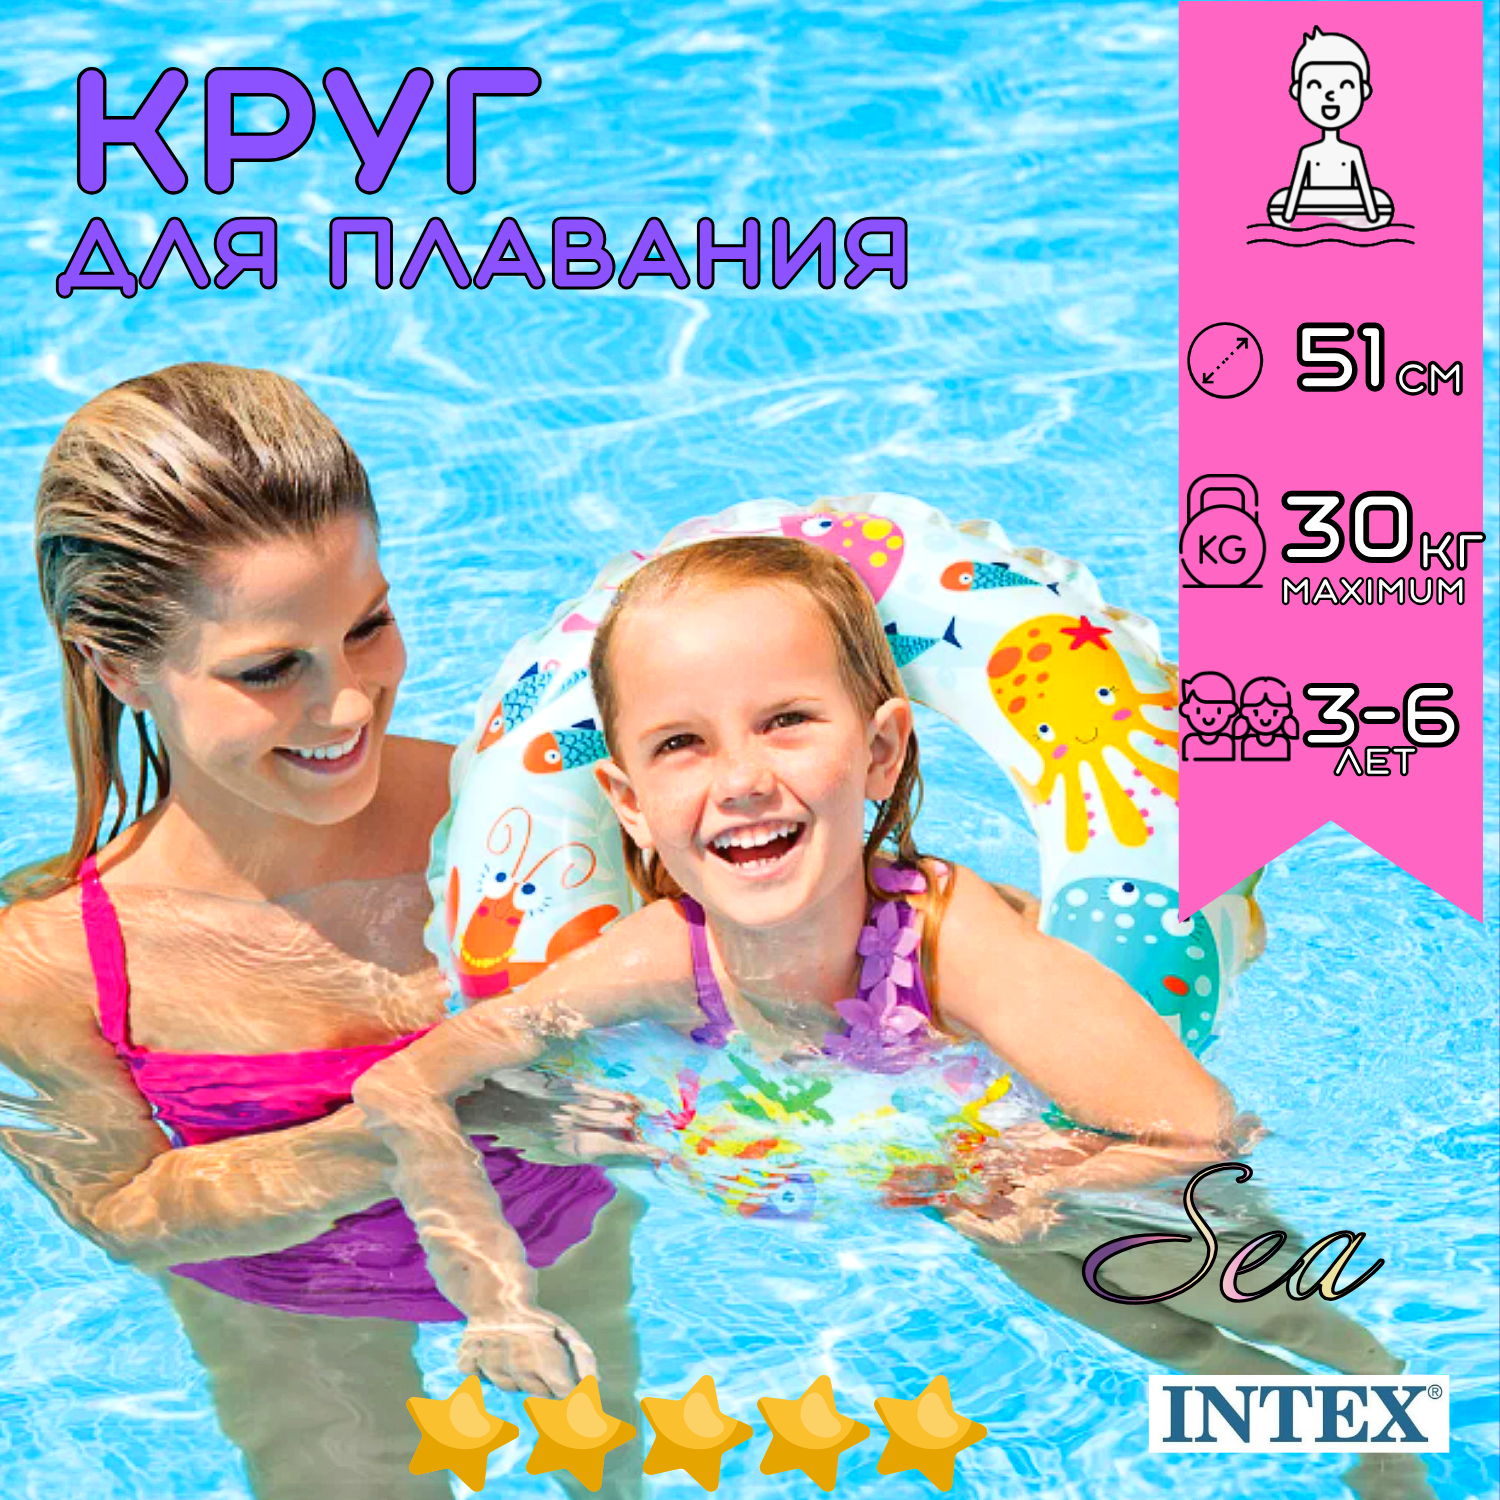 Надувной круг для плавания INTEX Sea 51 см, для детей от 3 до 6 лет на пляж и в бассейн, нагрузка до 30 кг, плотный с рисунком, без насоса, прочный, цвет микс / 1 шт